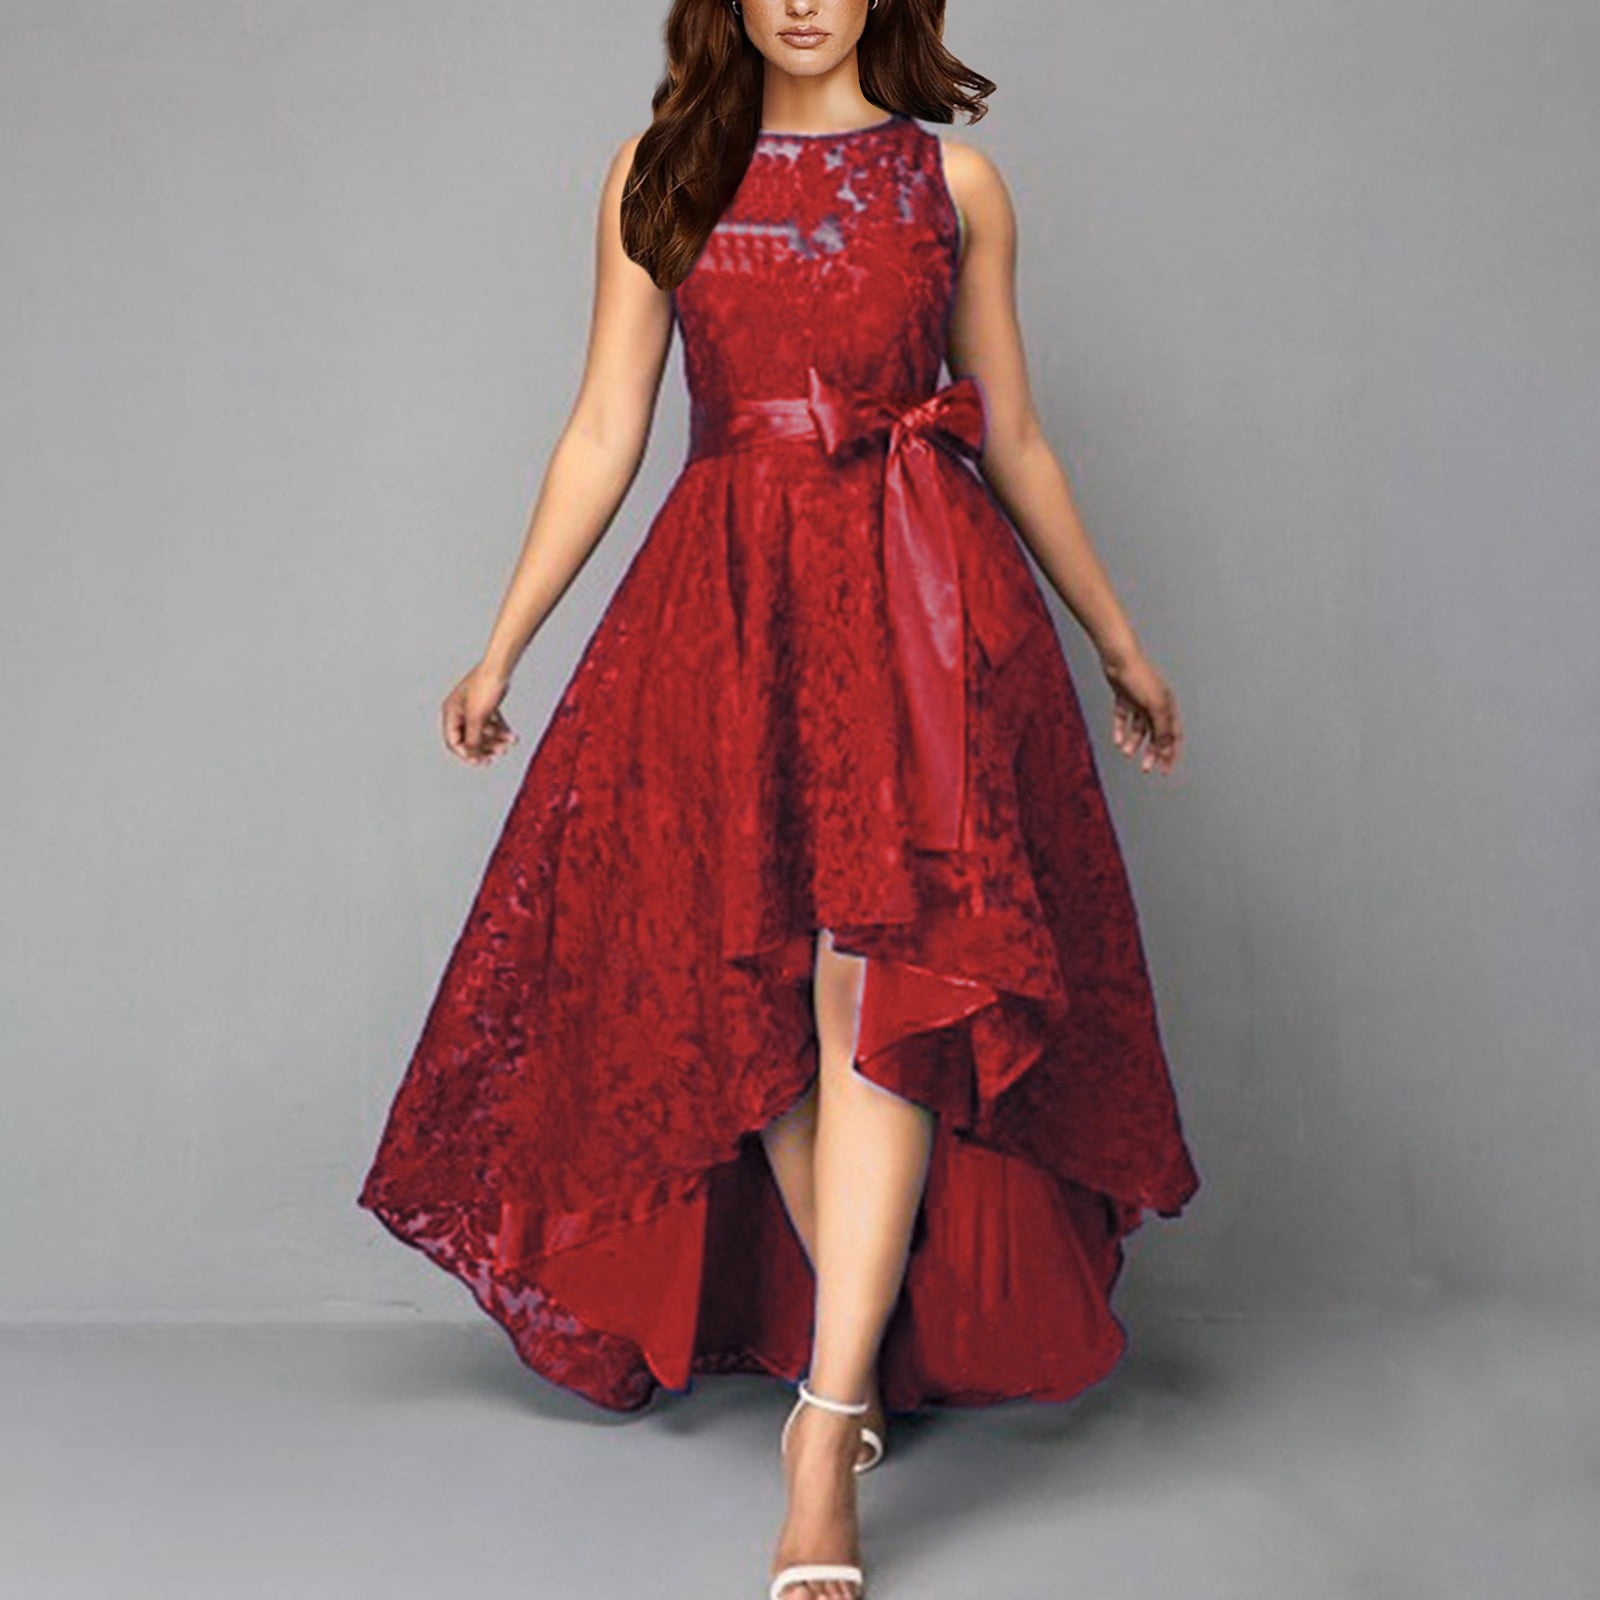 Shop the Best Party Dresses For Women | POPSUGAR Fashion UK